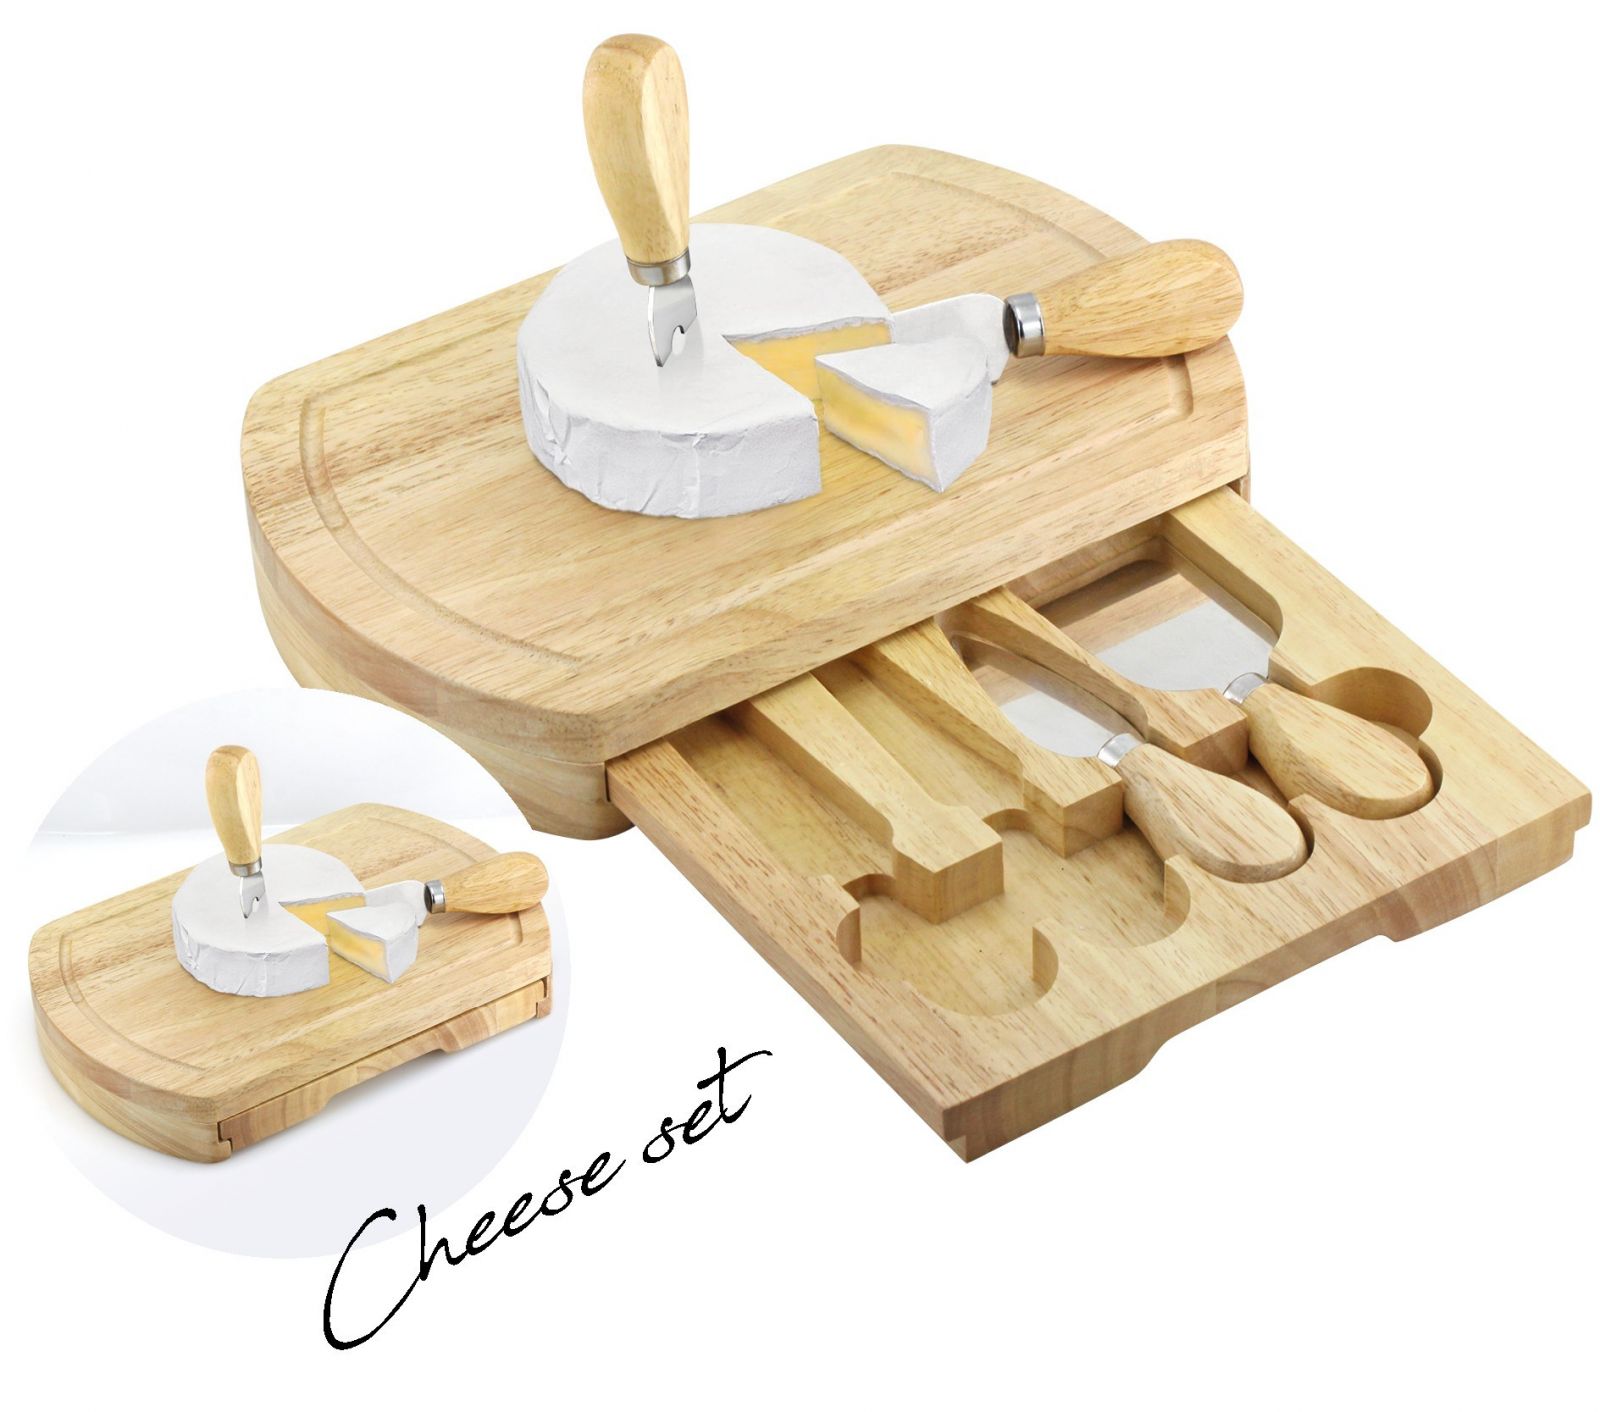 Kompletní sada na servírování sýrů MPM Cheese Set v dřevěné krabičce o rozměrech 249 x 163 x 38 mm. Sada obsahuje dva typy nožů, škrabku a vidličku, vše z nerezové oceli a dřeva Q04.